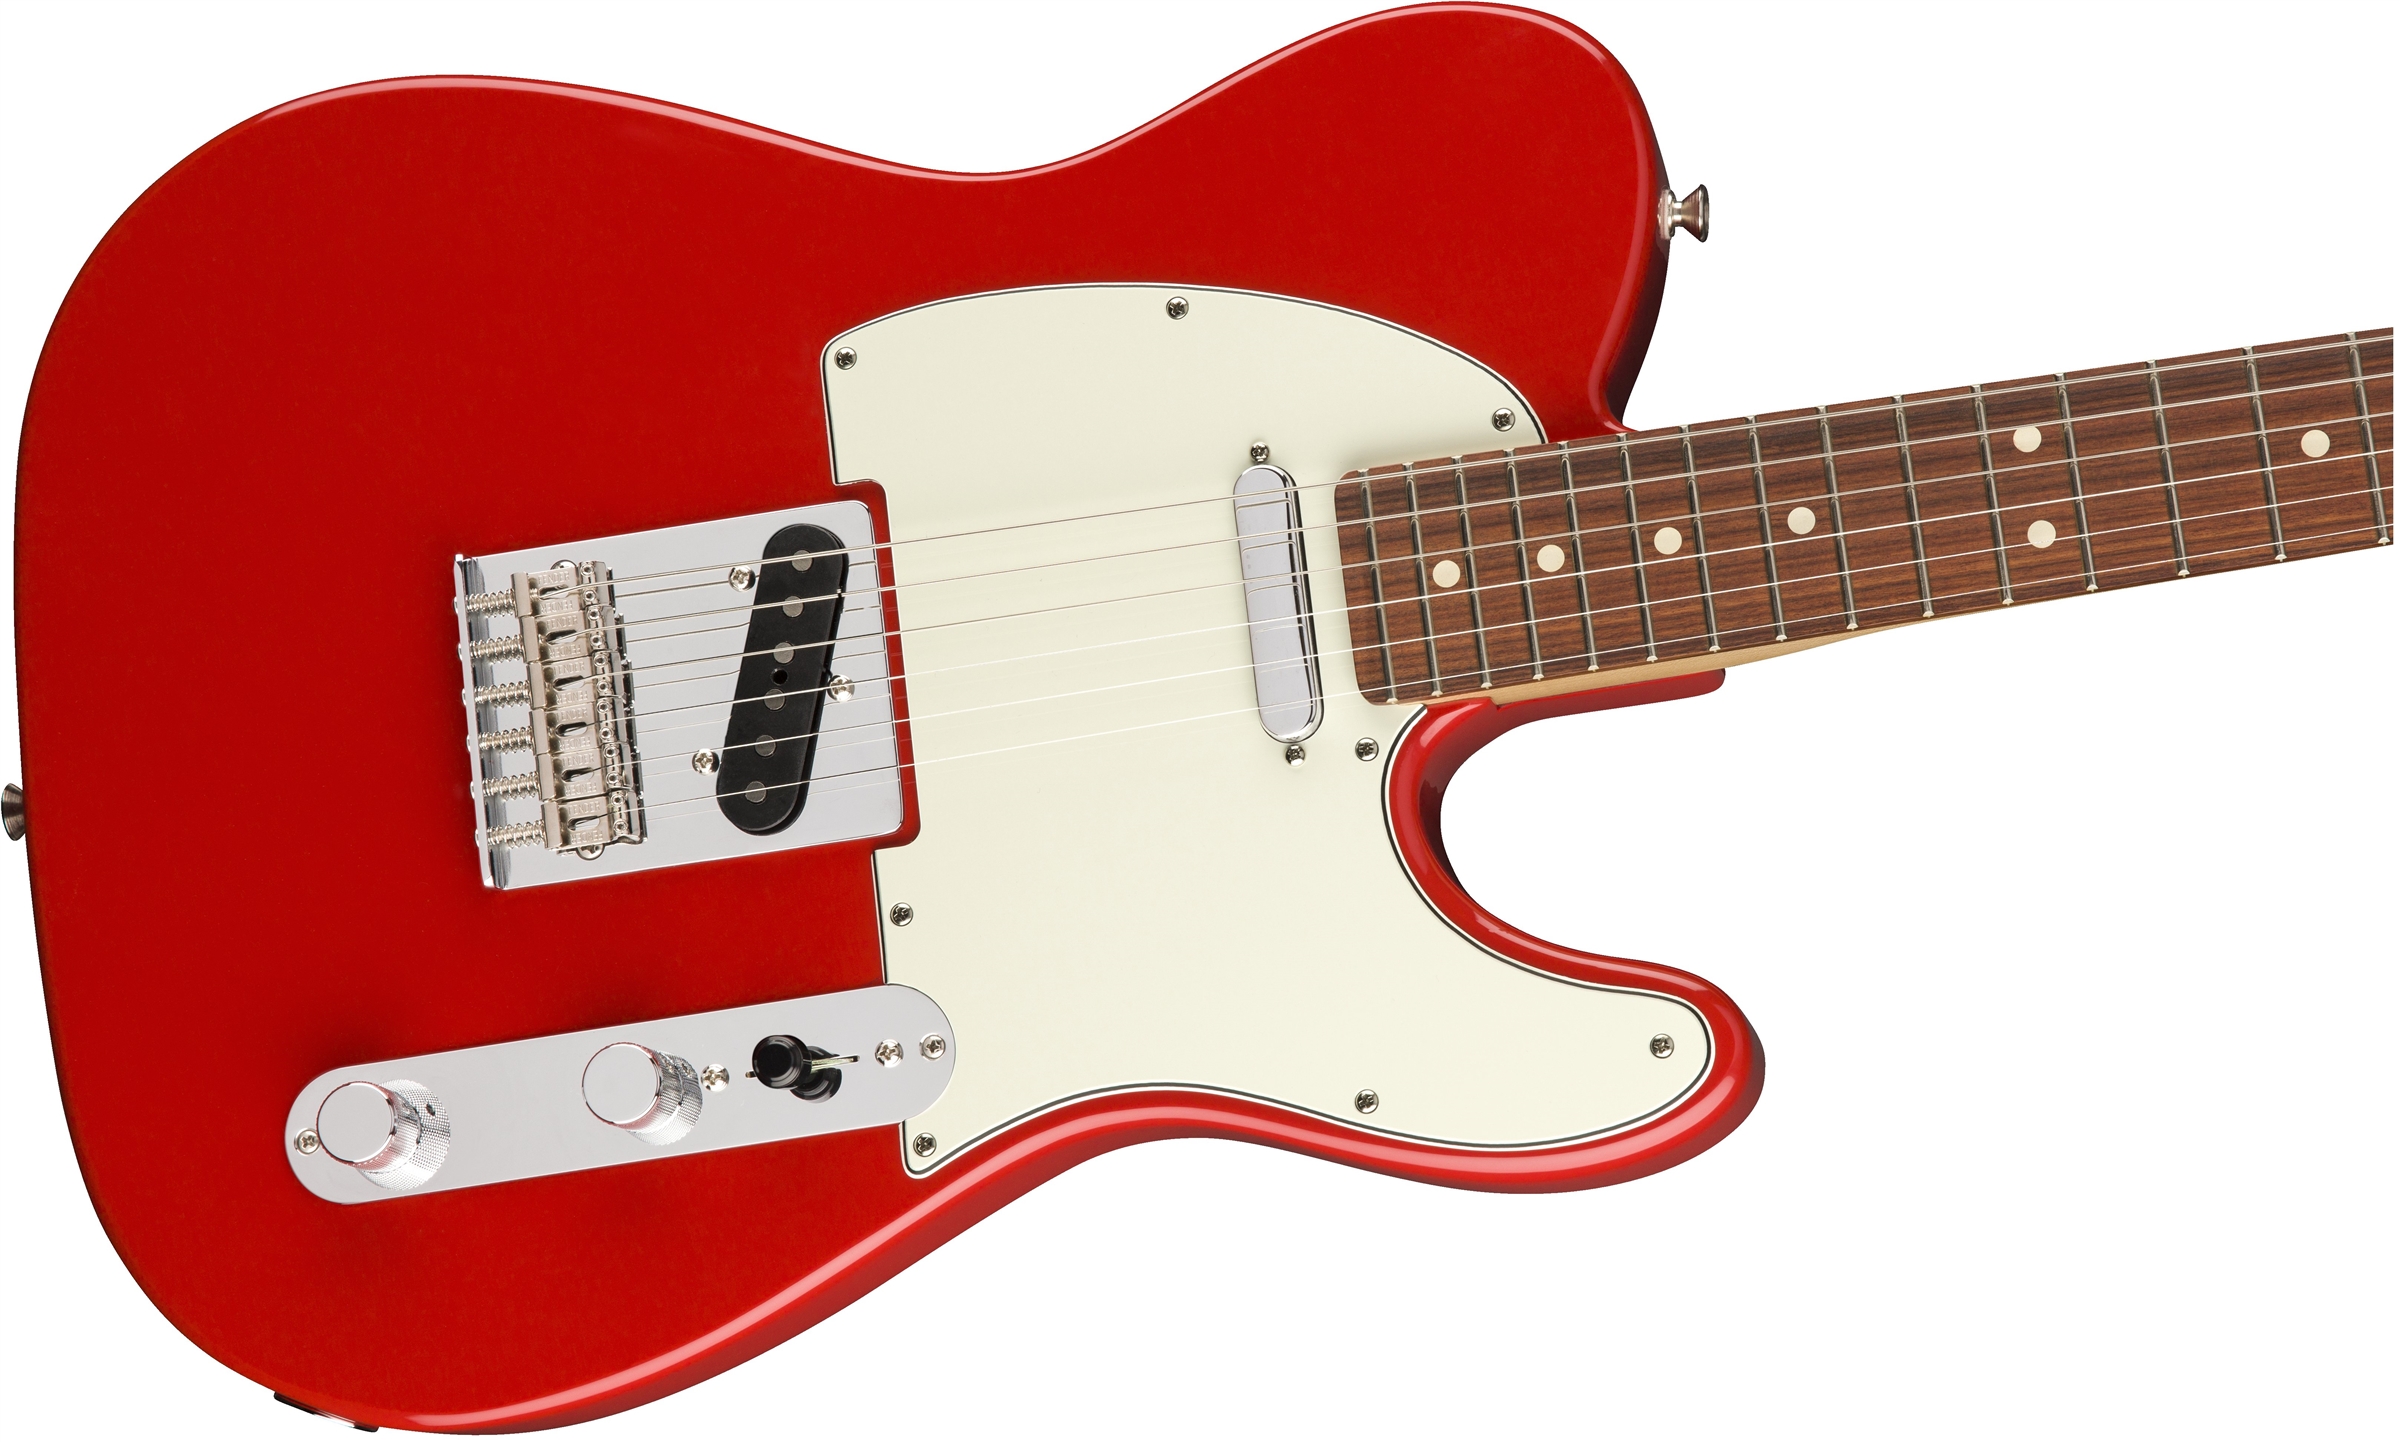 Fender Tele Player Mex Ss Pf - Sonic Red - Televorm elektrische gitaar - Variation 3